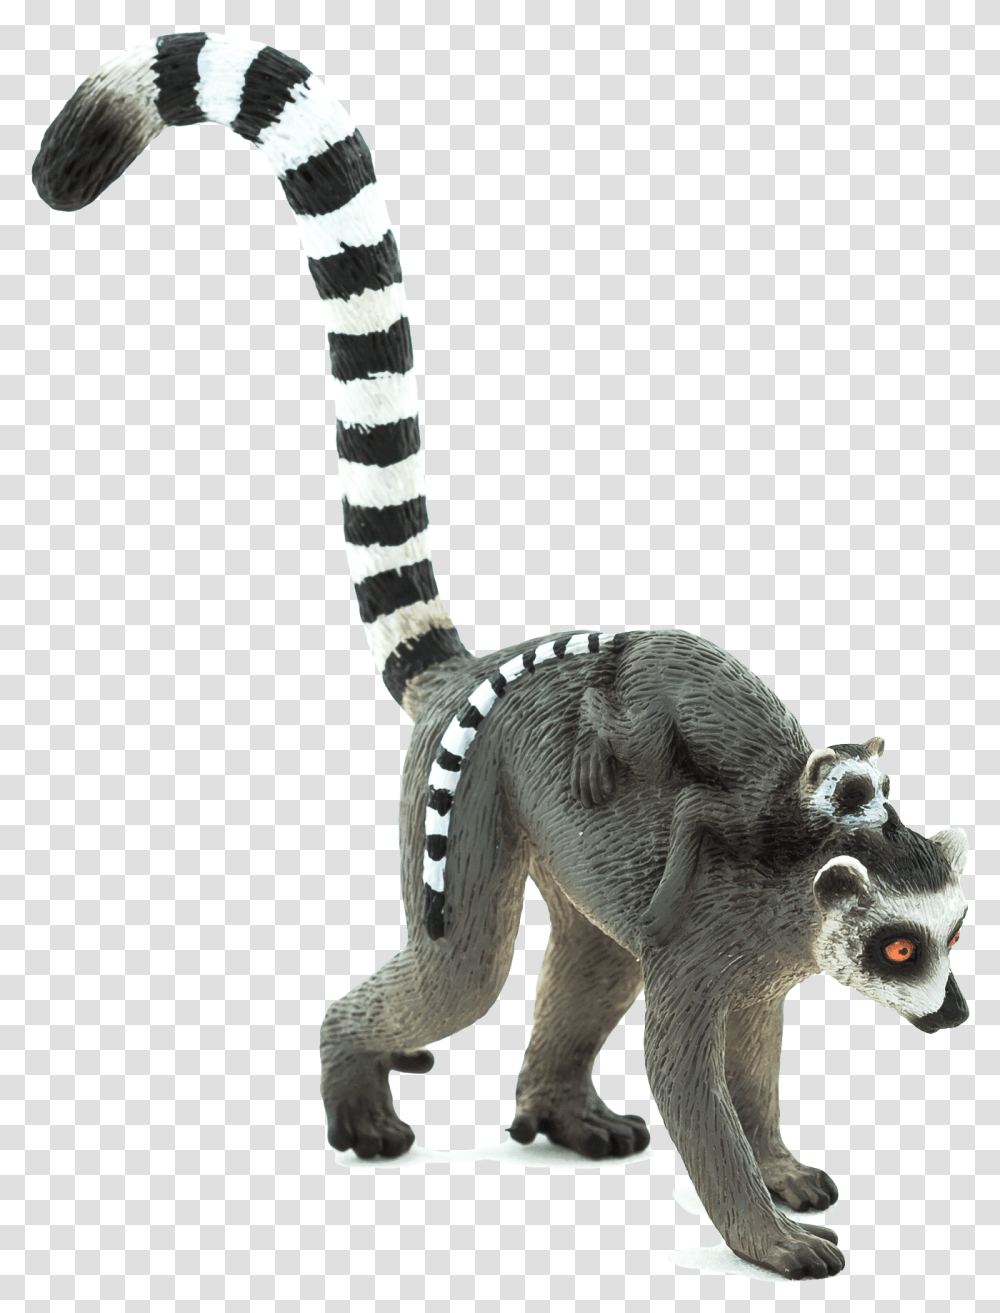 Lemur, Statue, Sculpture, Ornament Transparent Png